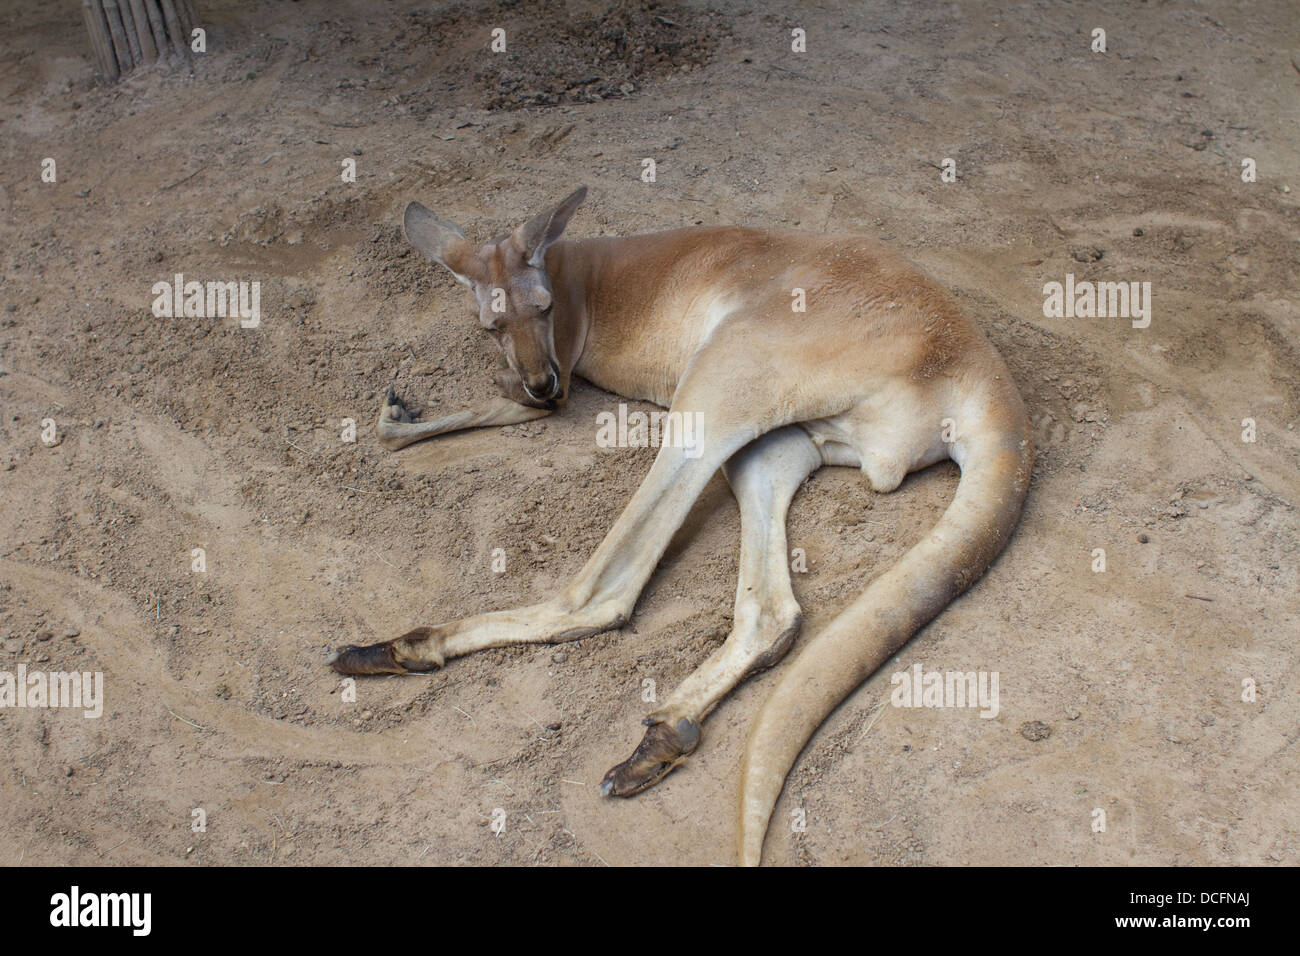 Le kangourou un marsupial de la famille des Macropodidae dormir sur le terrain Banque D'Images